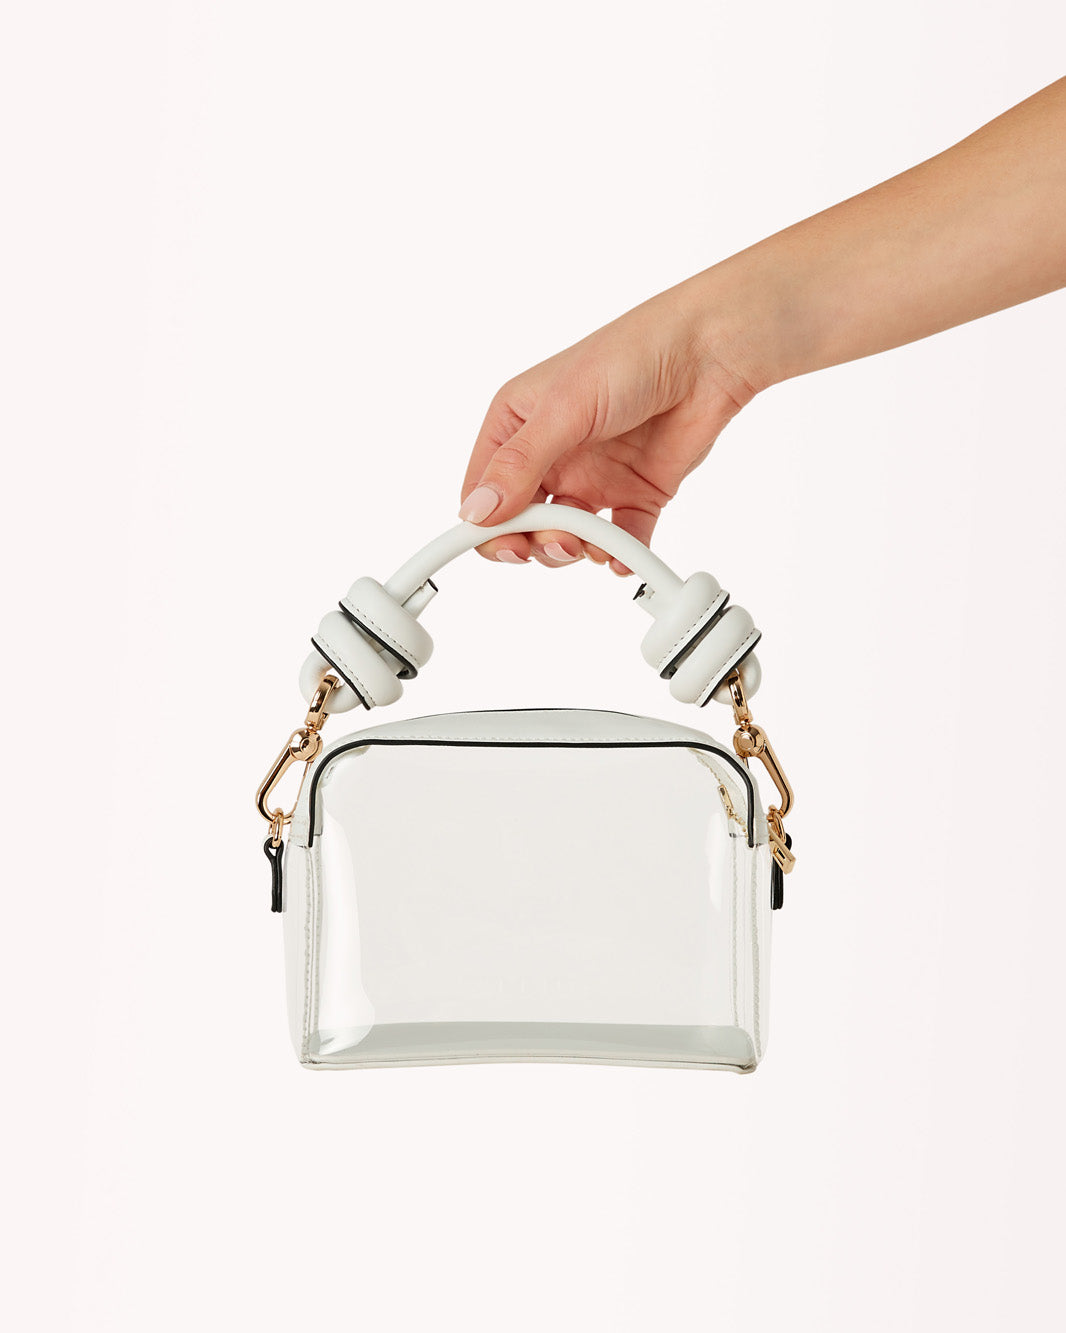 CRETE HANDLE BAG - WHITE-CLEAR-Handbags-Billini-O/S-BILLINI USA